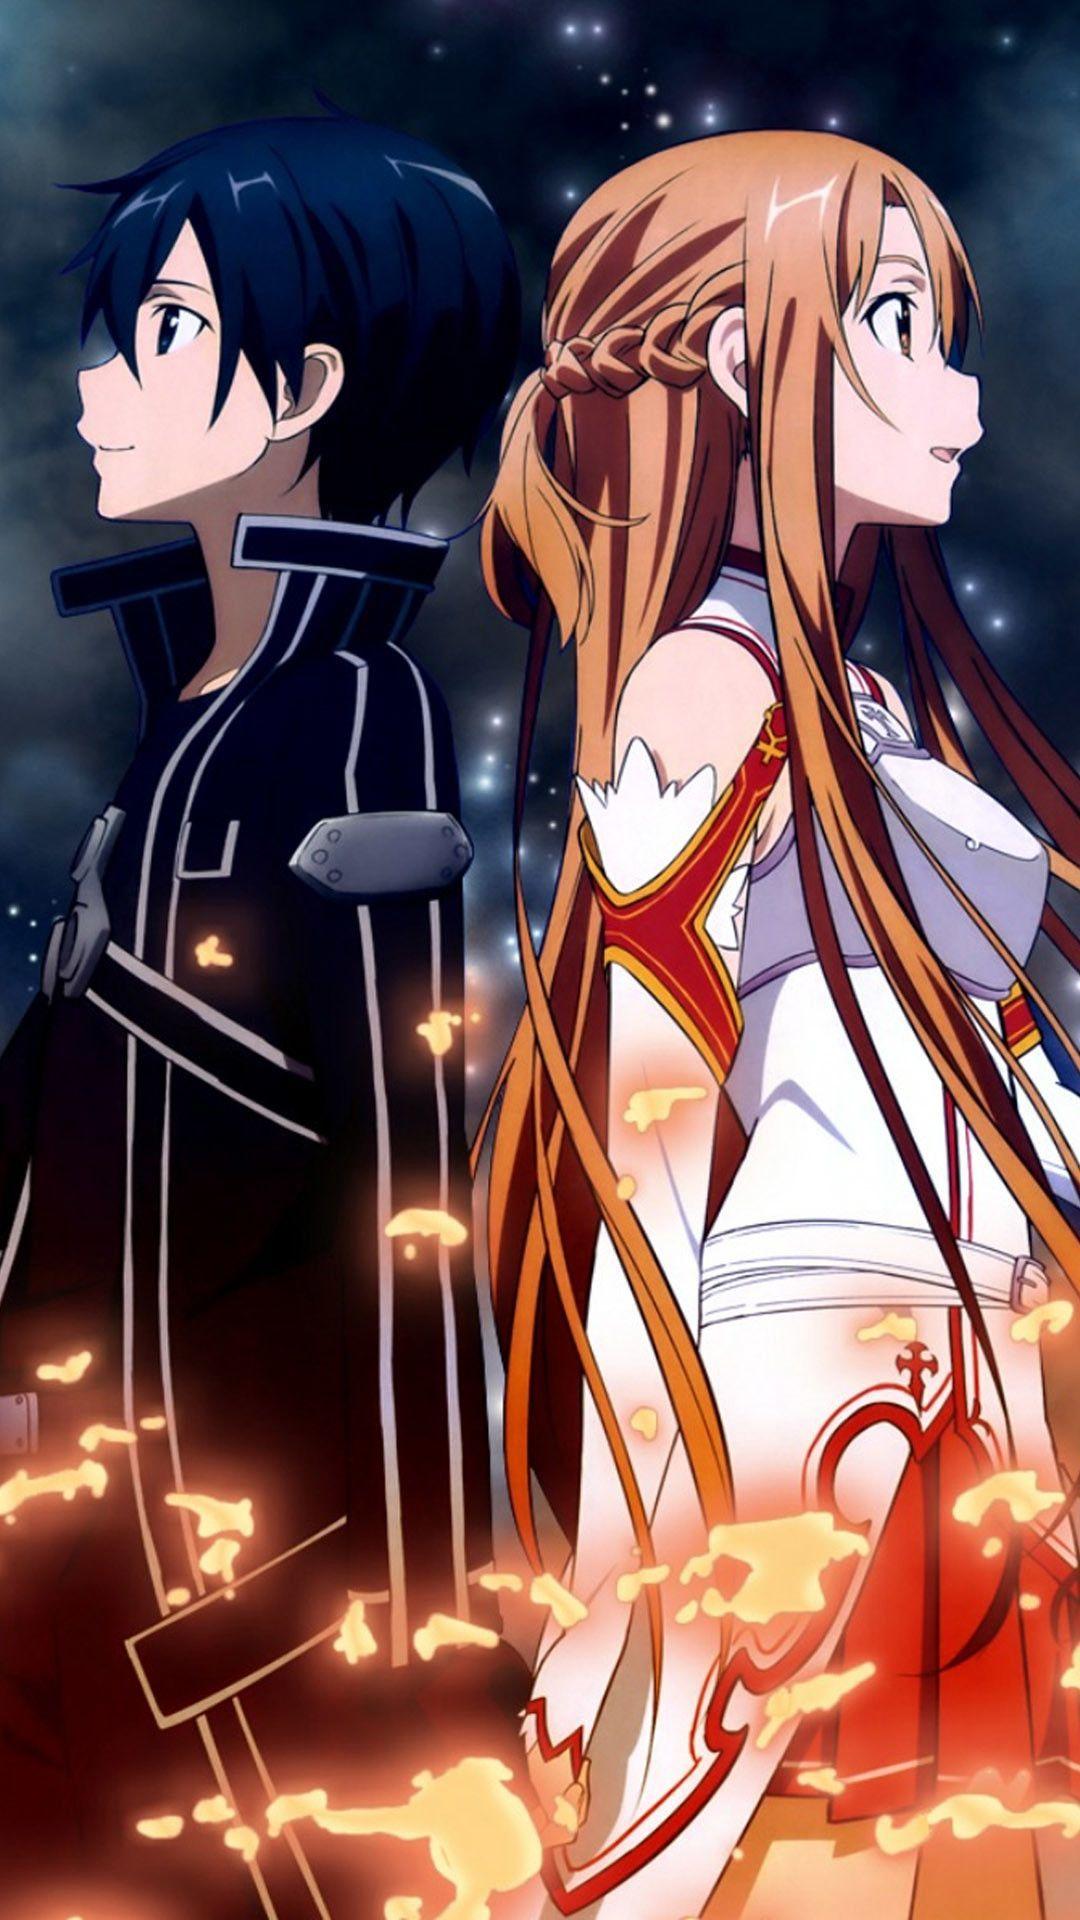 Hình nền  hình minh họa Anime Sword Art Online Yuuki Asuna hoạt hình  Mangaka 1280x800  Jeko98  93985  Hình nền đẹp hd  WallHere